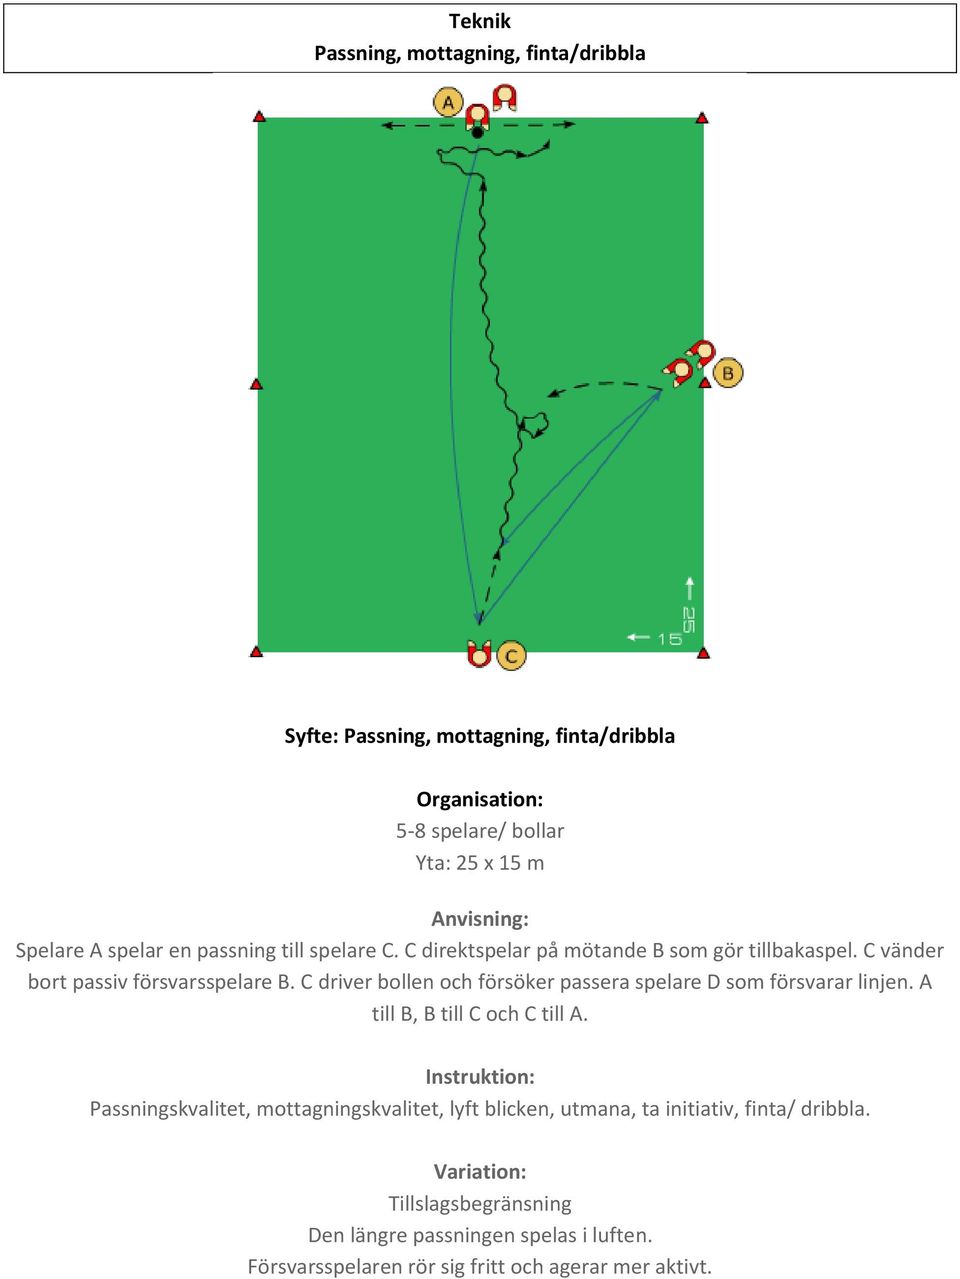 C driver bollen och försöker passera spelare D som försvarar linjen. A till B, B till C och C till A.